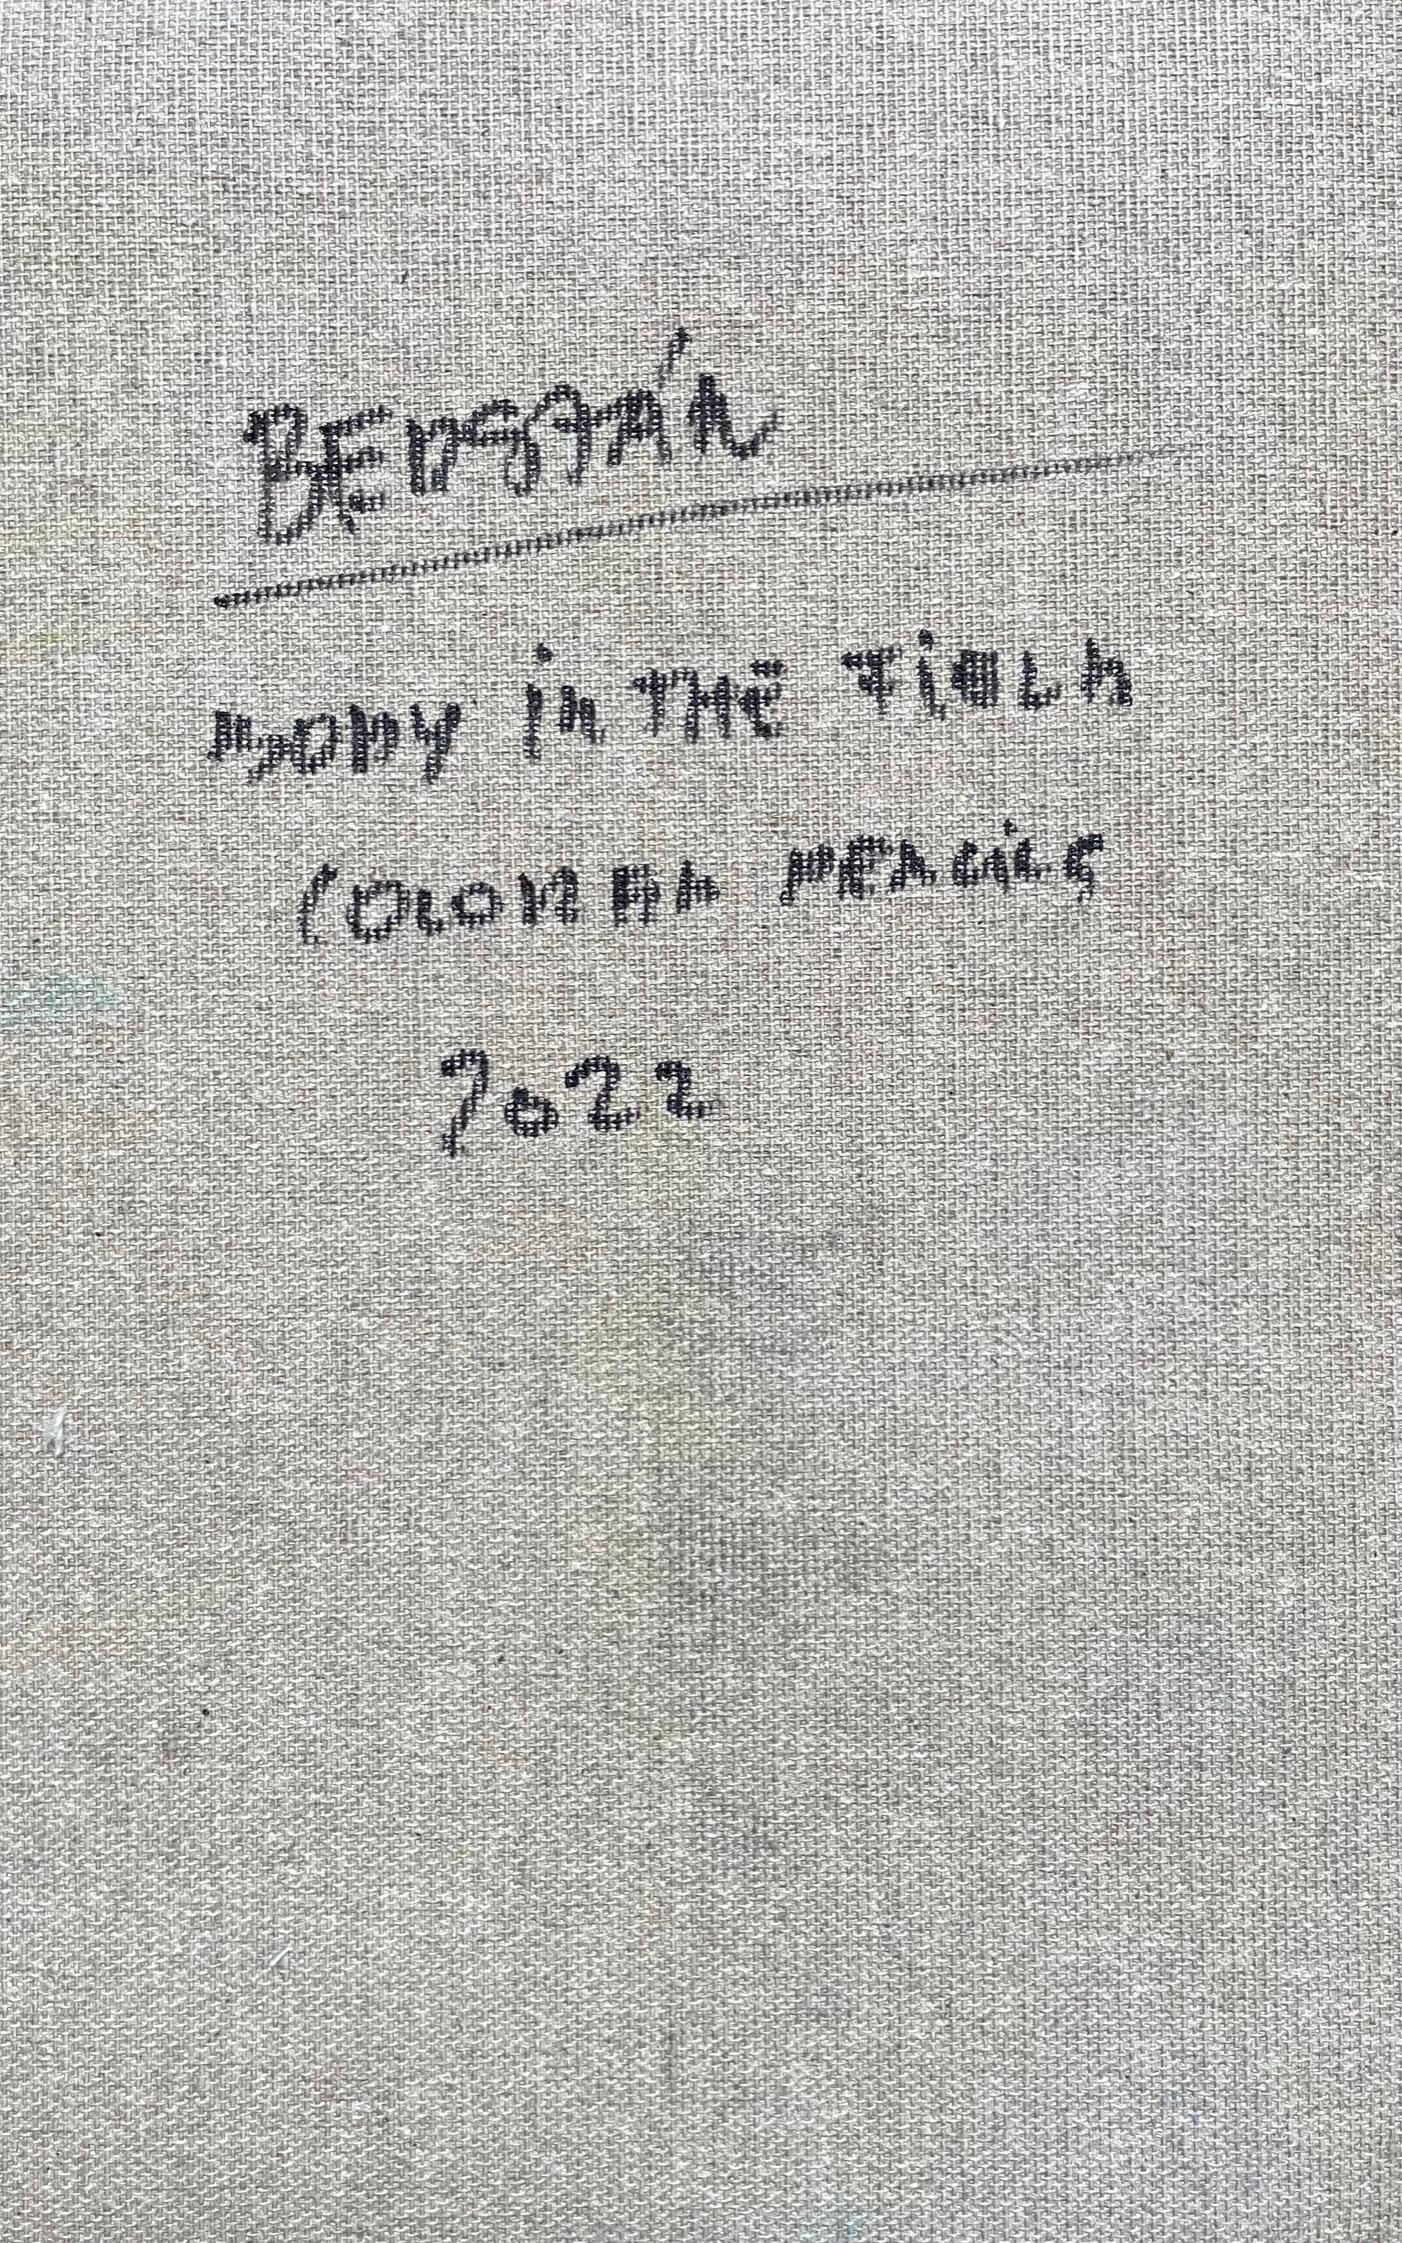 Corps sur le terrain #11, 2022
crayons de couleur sur toile

25 H x 16 L cm

Signé au dos

Zsolt Berszán incarne dans ses œuvres la dissolution du corps humain à travers le prisme du fragment, du corps en morceaux et de la carcasse squelettique.